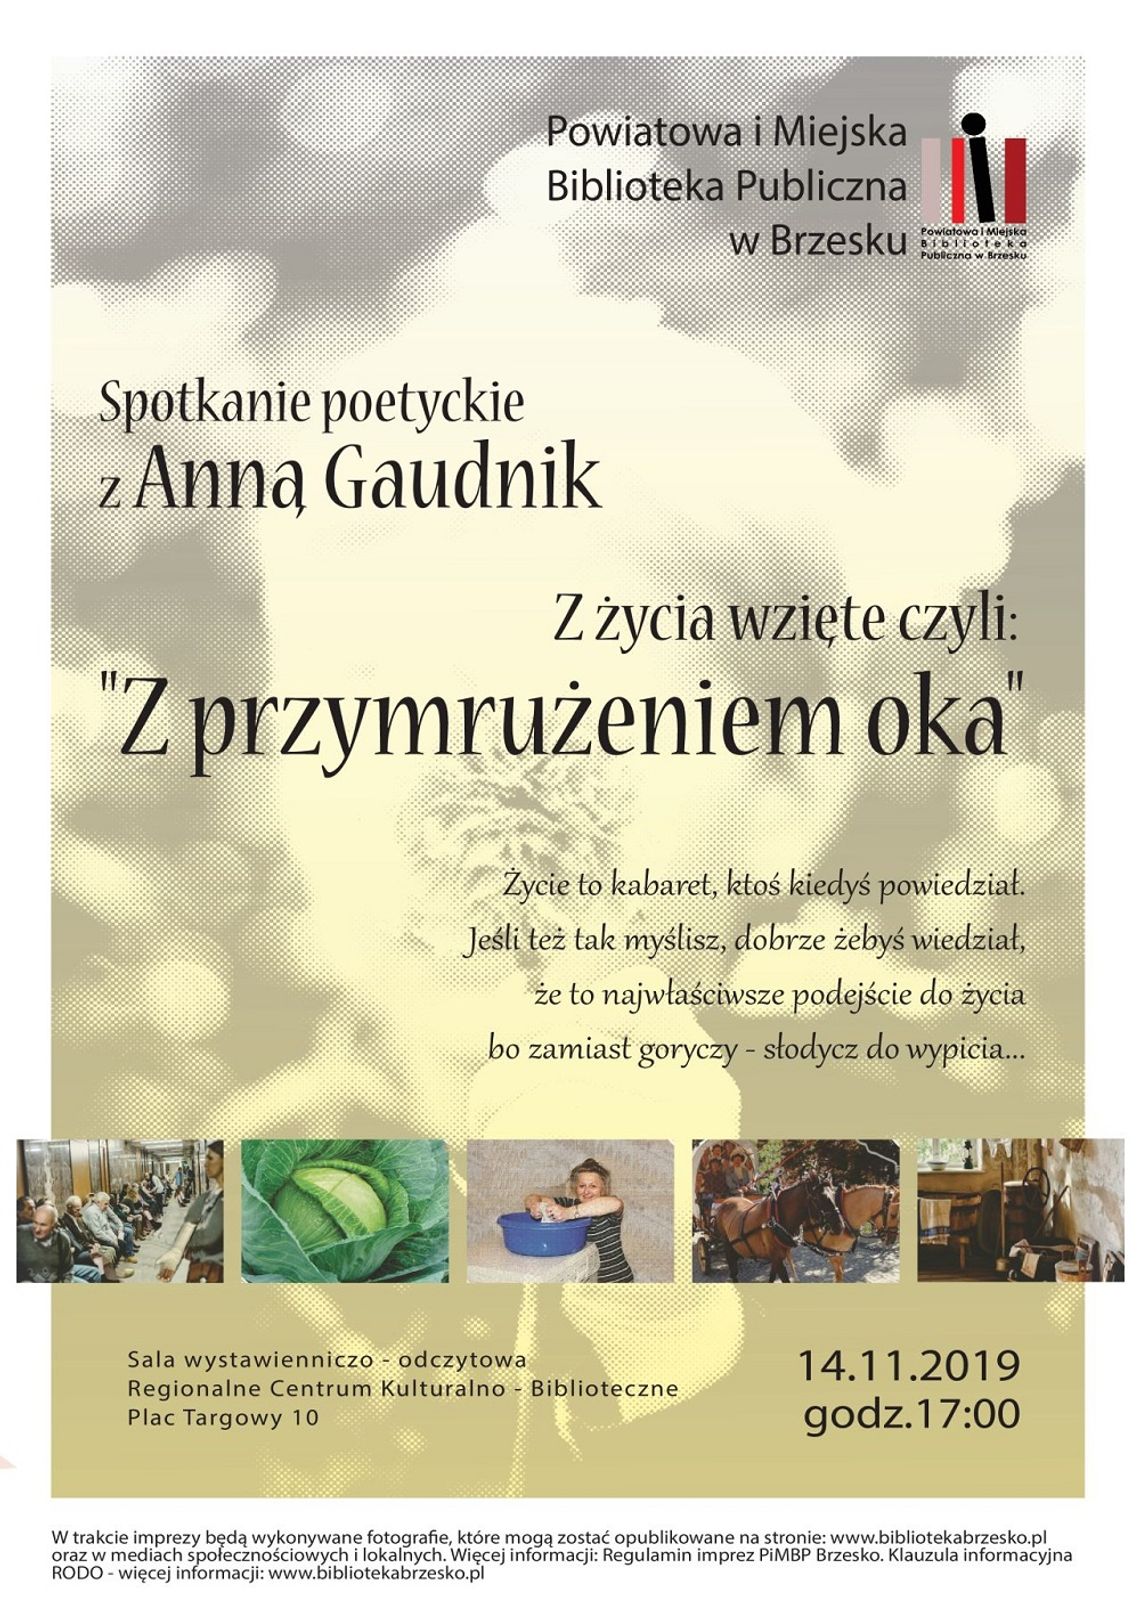 Spotkanie poetyckie z brzeską artystką Anną Gaudnik